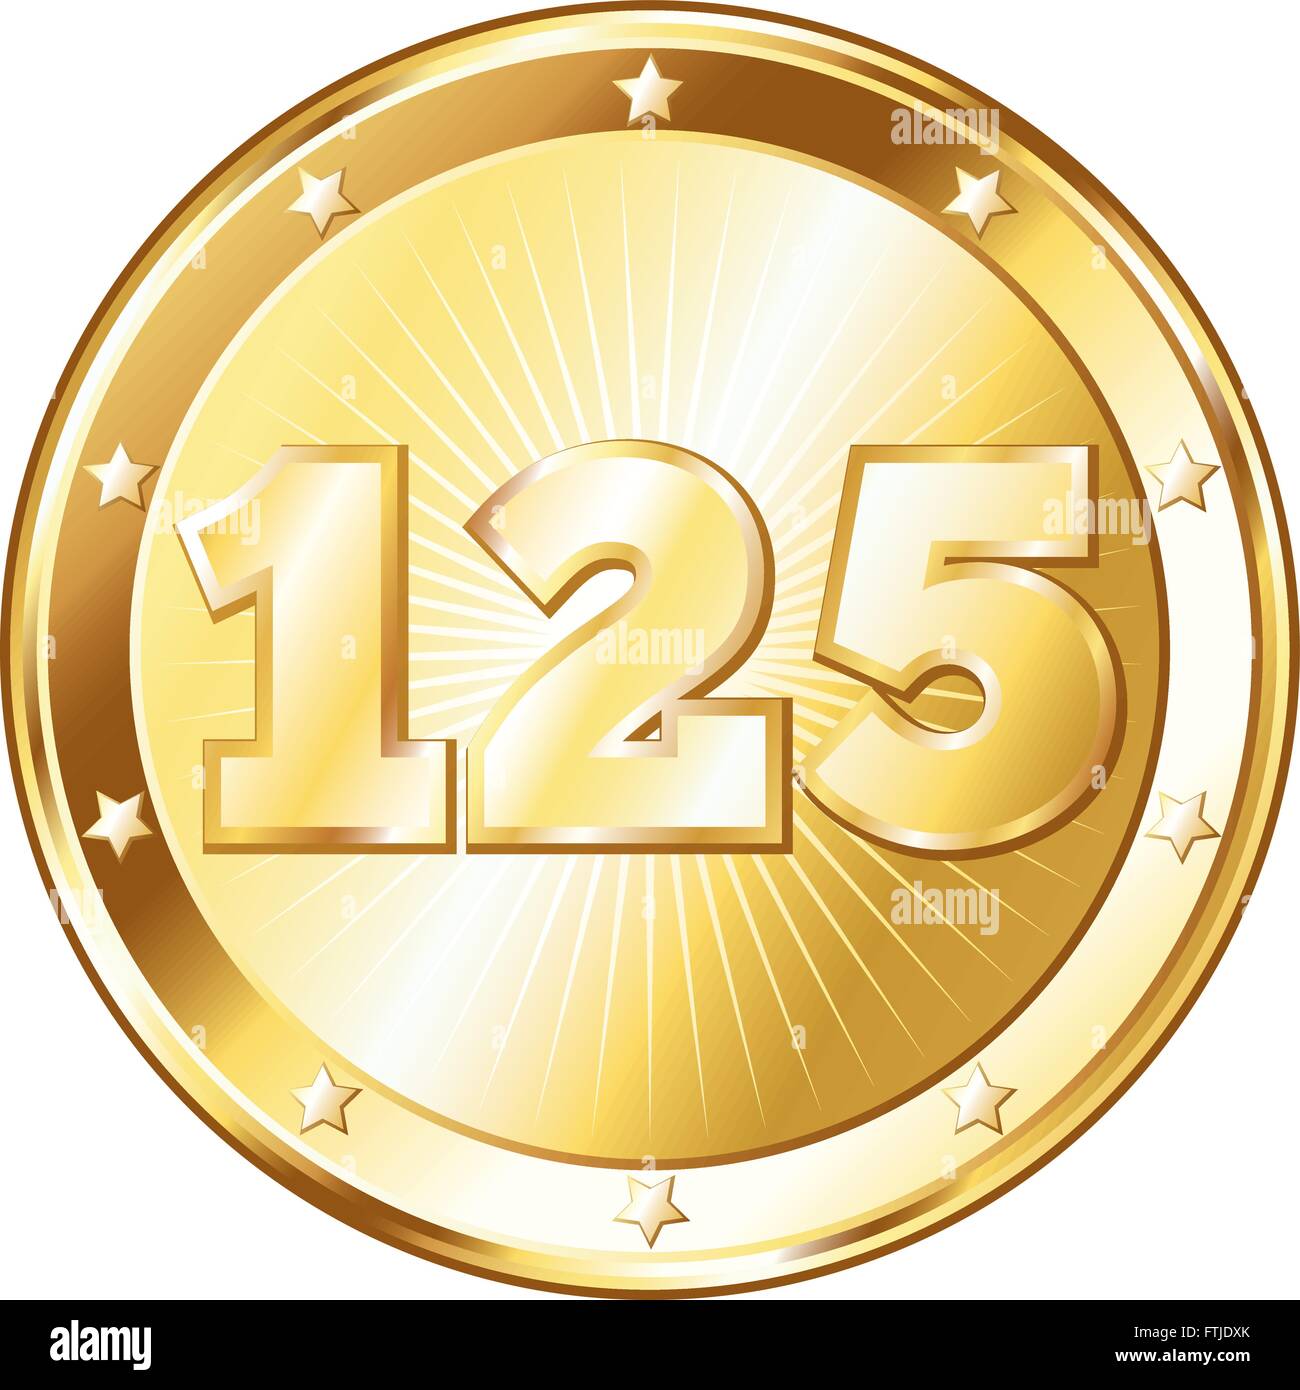 Round a forma di cerchio badge di metallo / sigillo di approvazione in un look d'oro e il numero di un centinaio di venticinque. Illustrazione Vettoriale